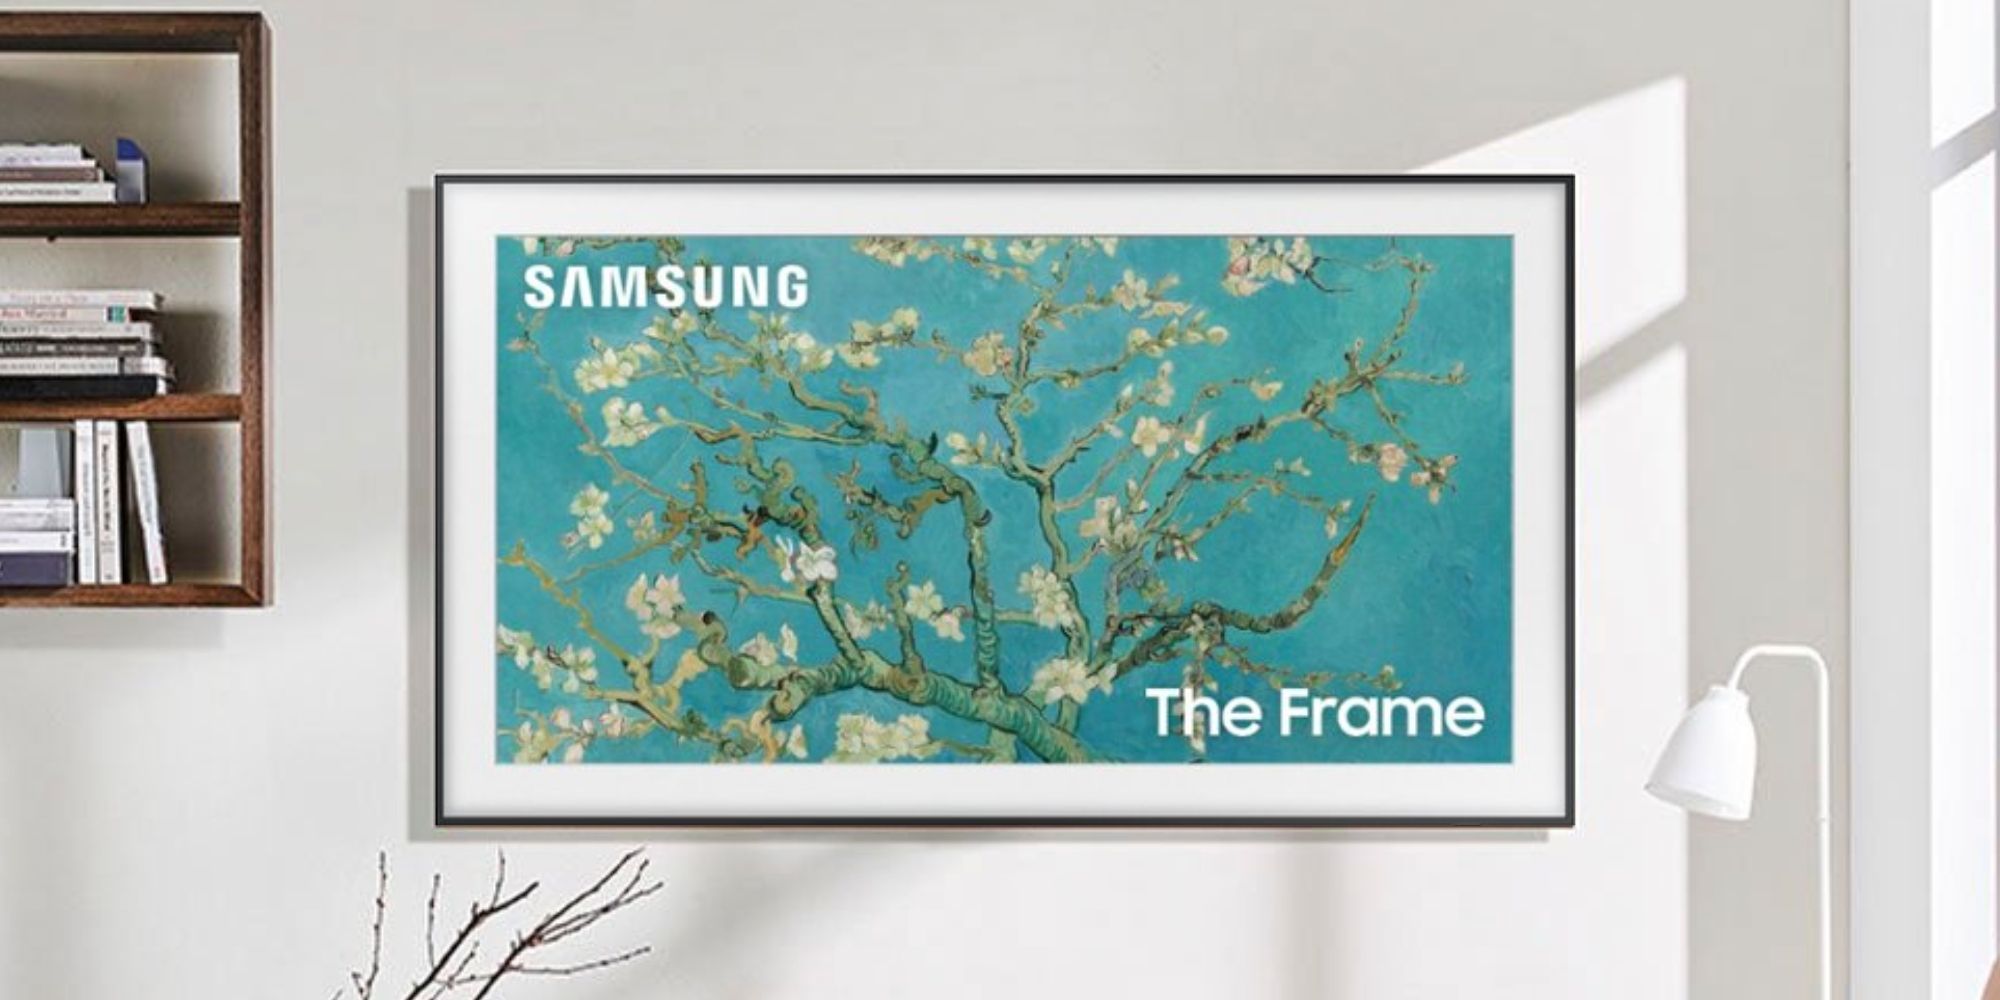 No pierda la oportunidad de ahorrar $ 800 en un televisor Samsung Frame de 75 pulgadas